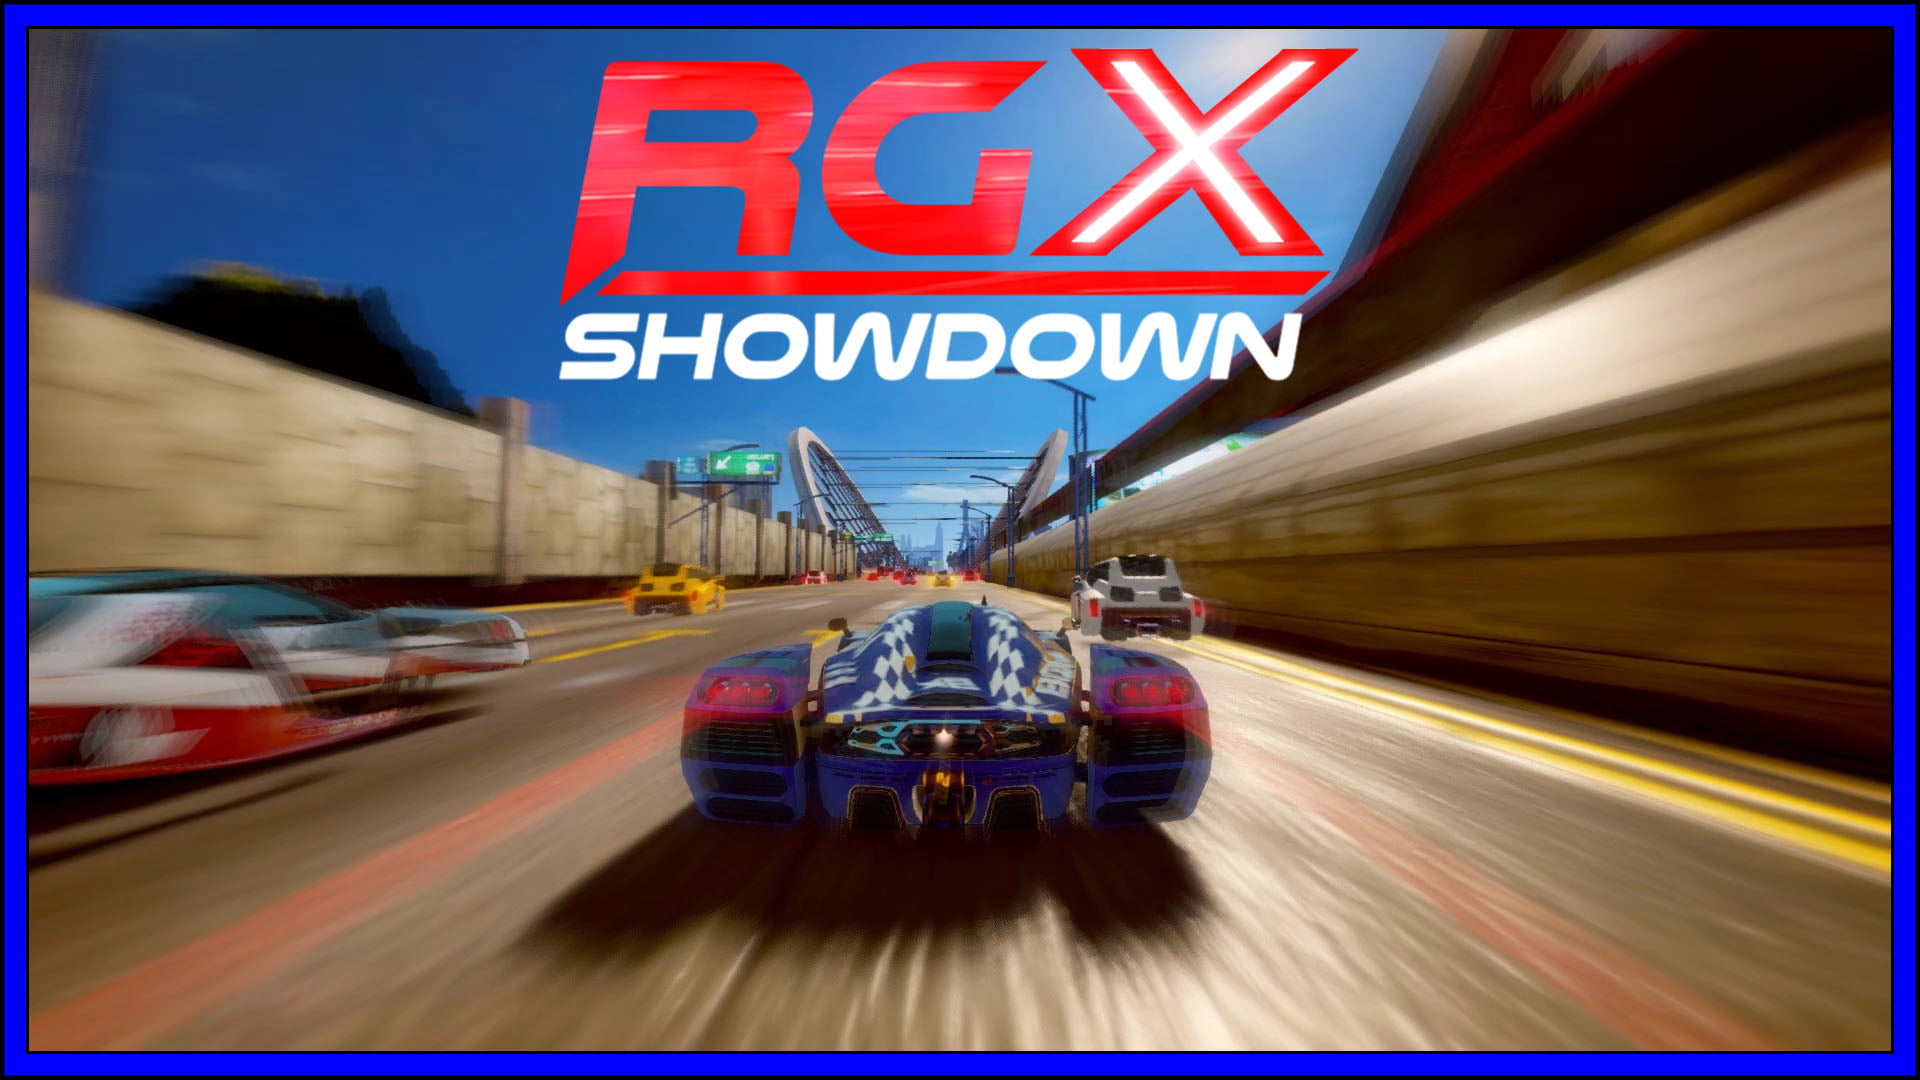 RGX Showdown Fi3